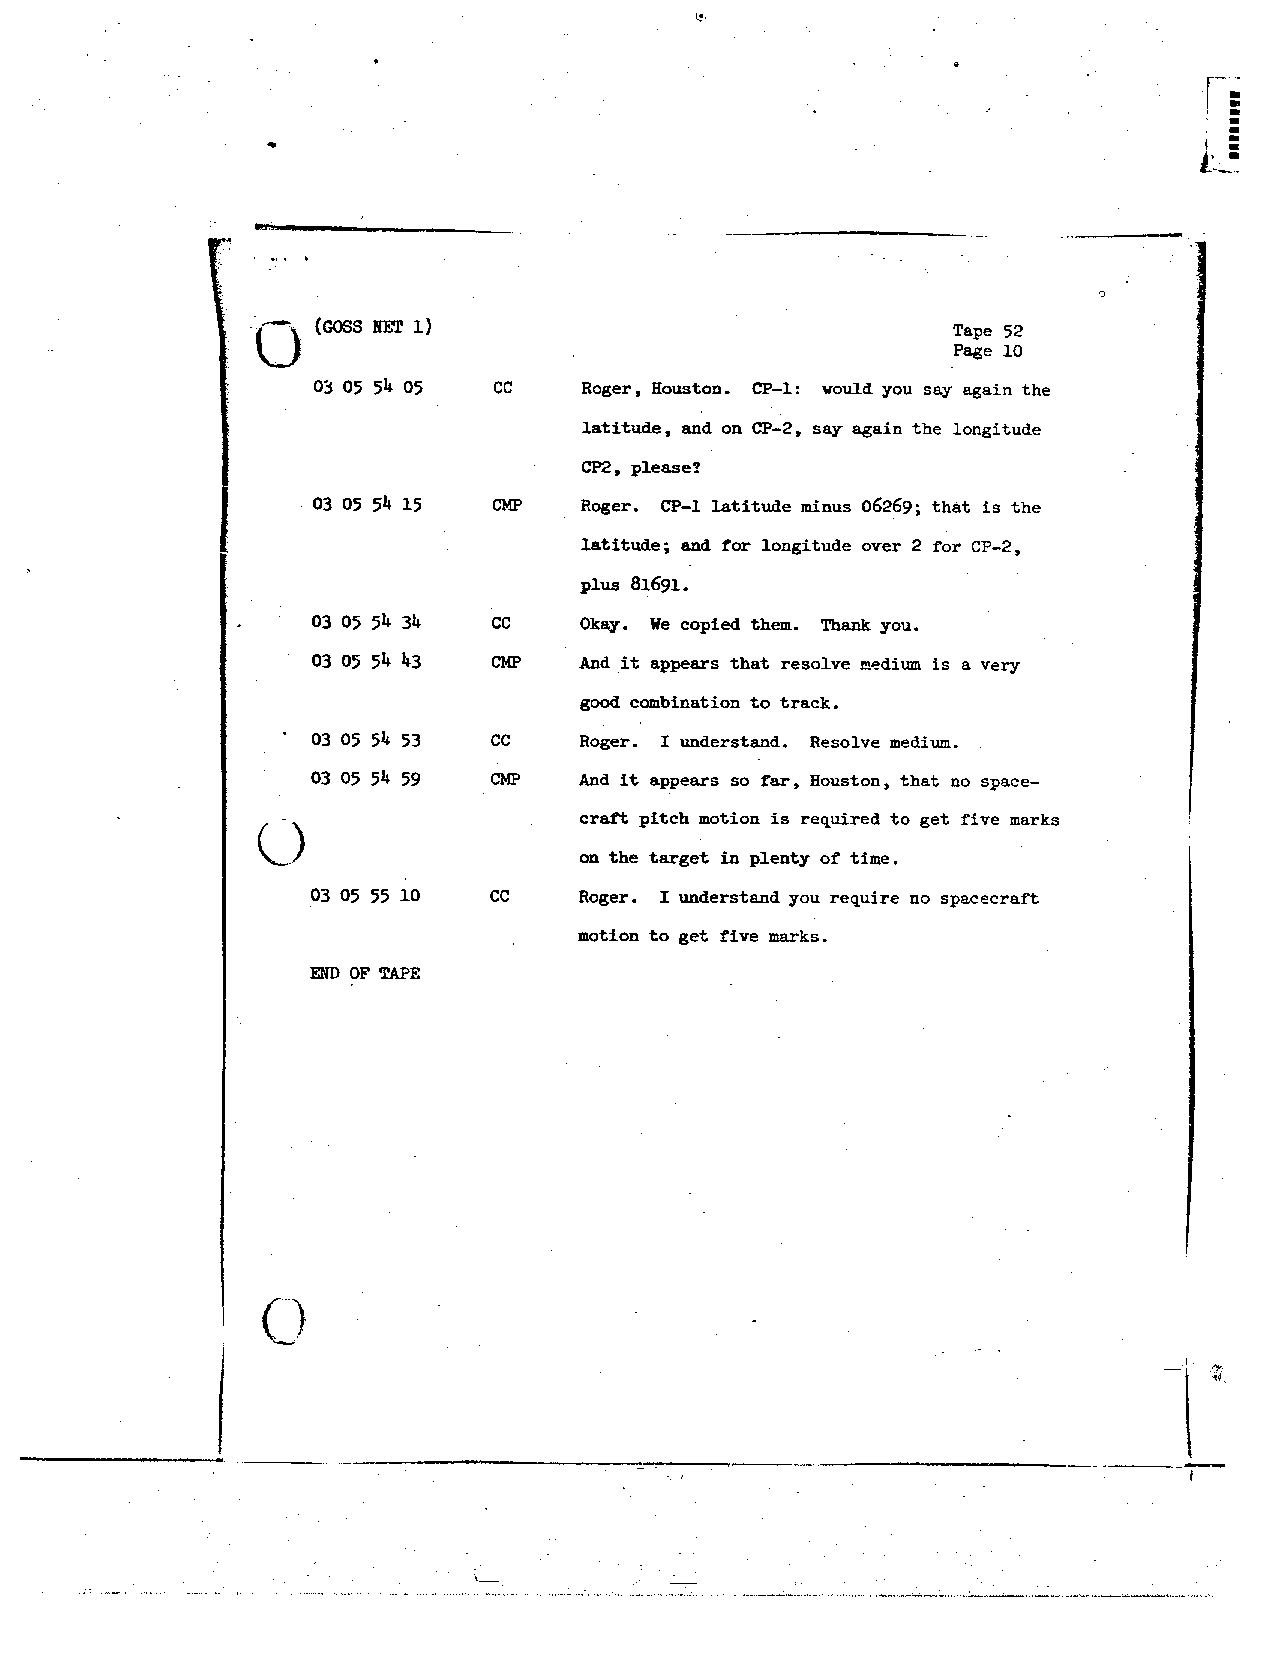 Page 418 of Apollo 8’s original transcript